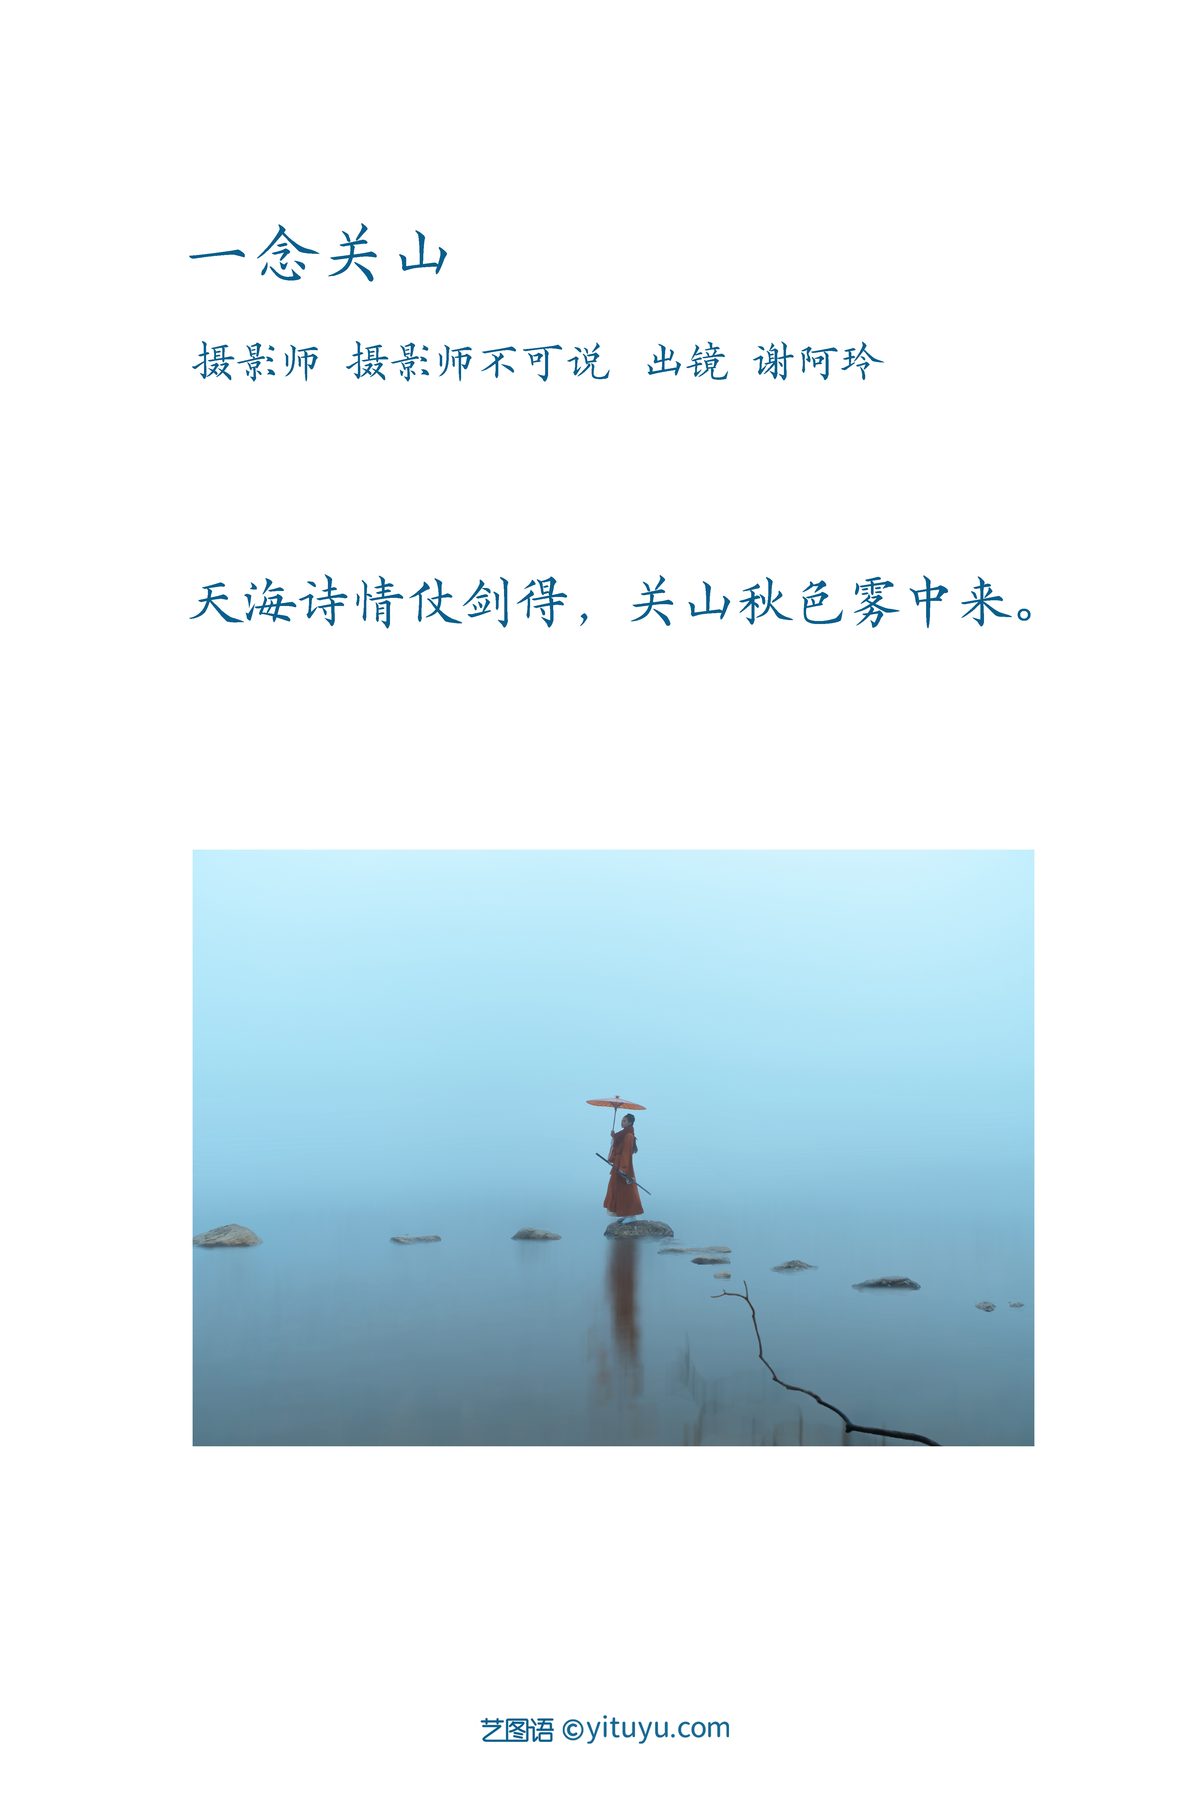 YiTuYu艺图语 Vol 3524 Xie A Ling 0002 6008369140.jpg